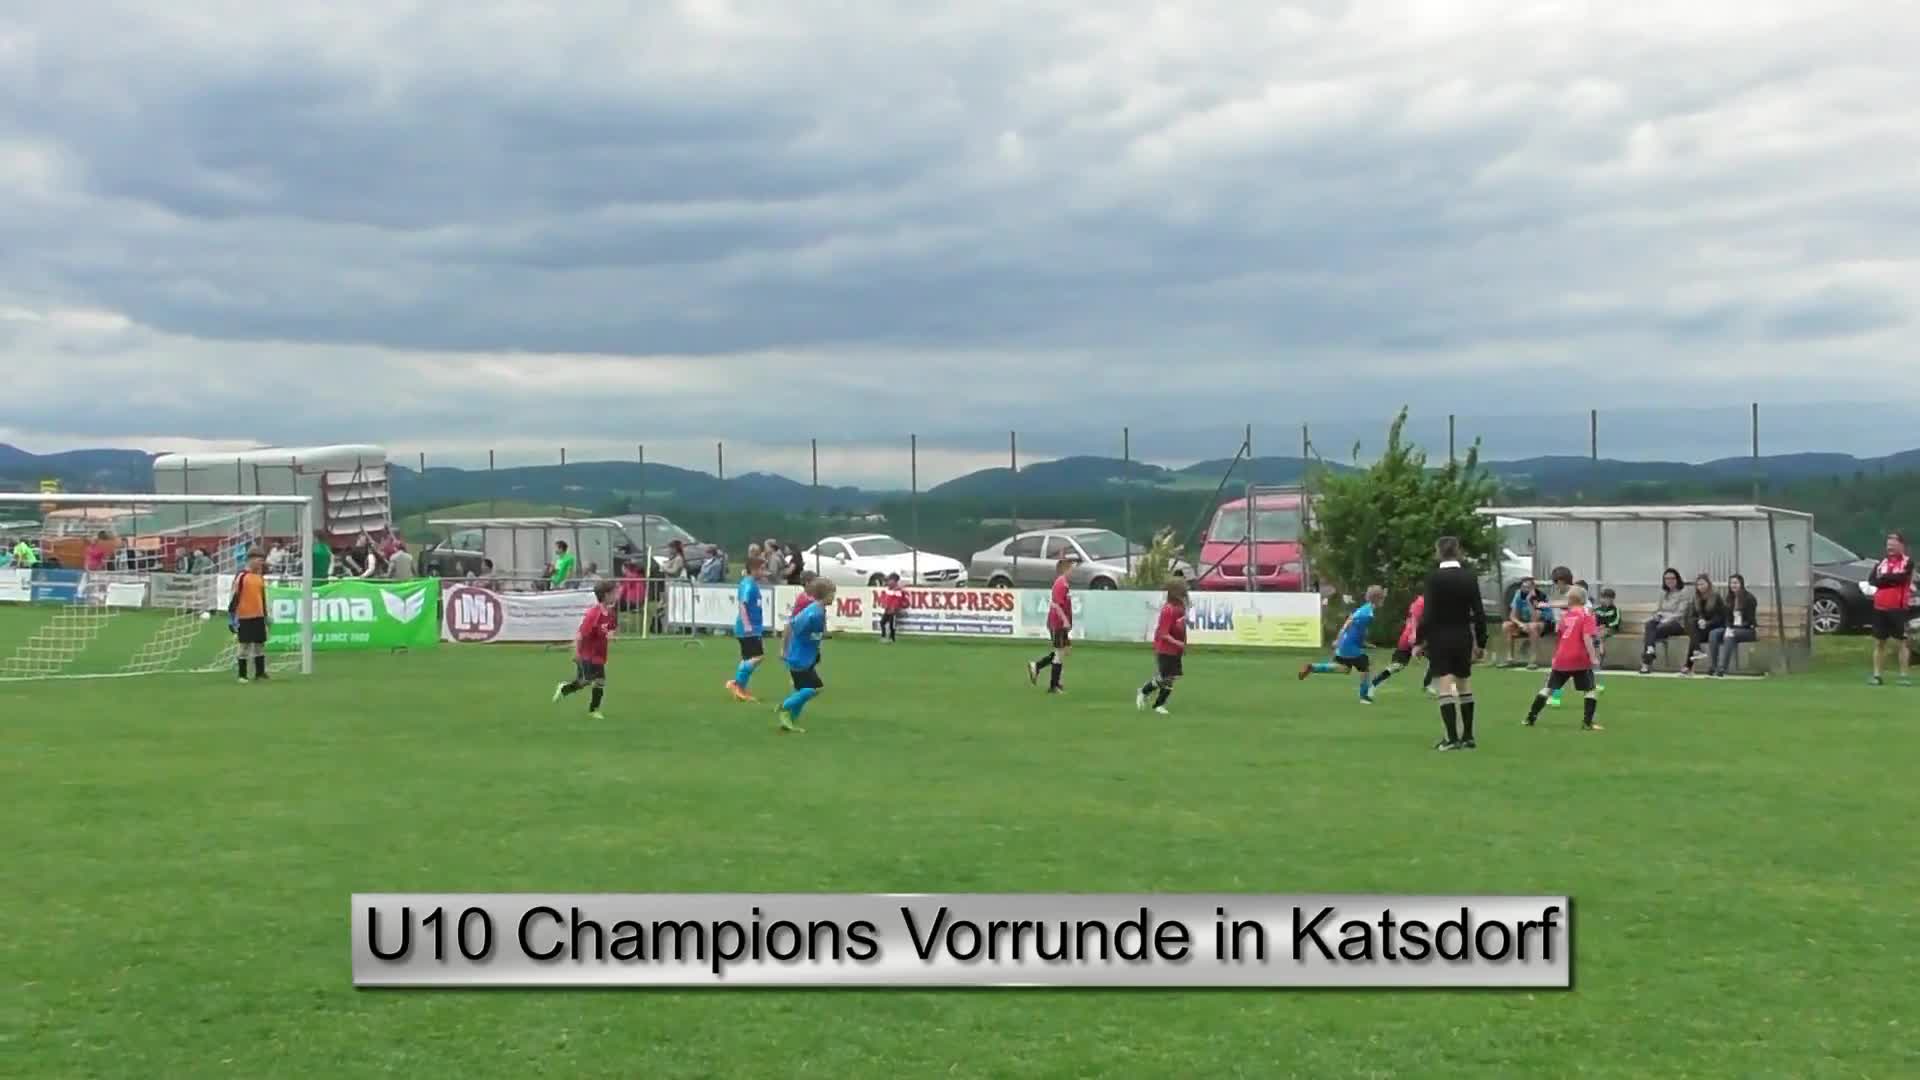 U 10 Champions Vorrunde in Katsdorf